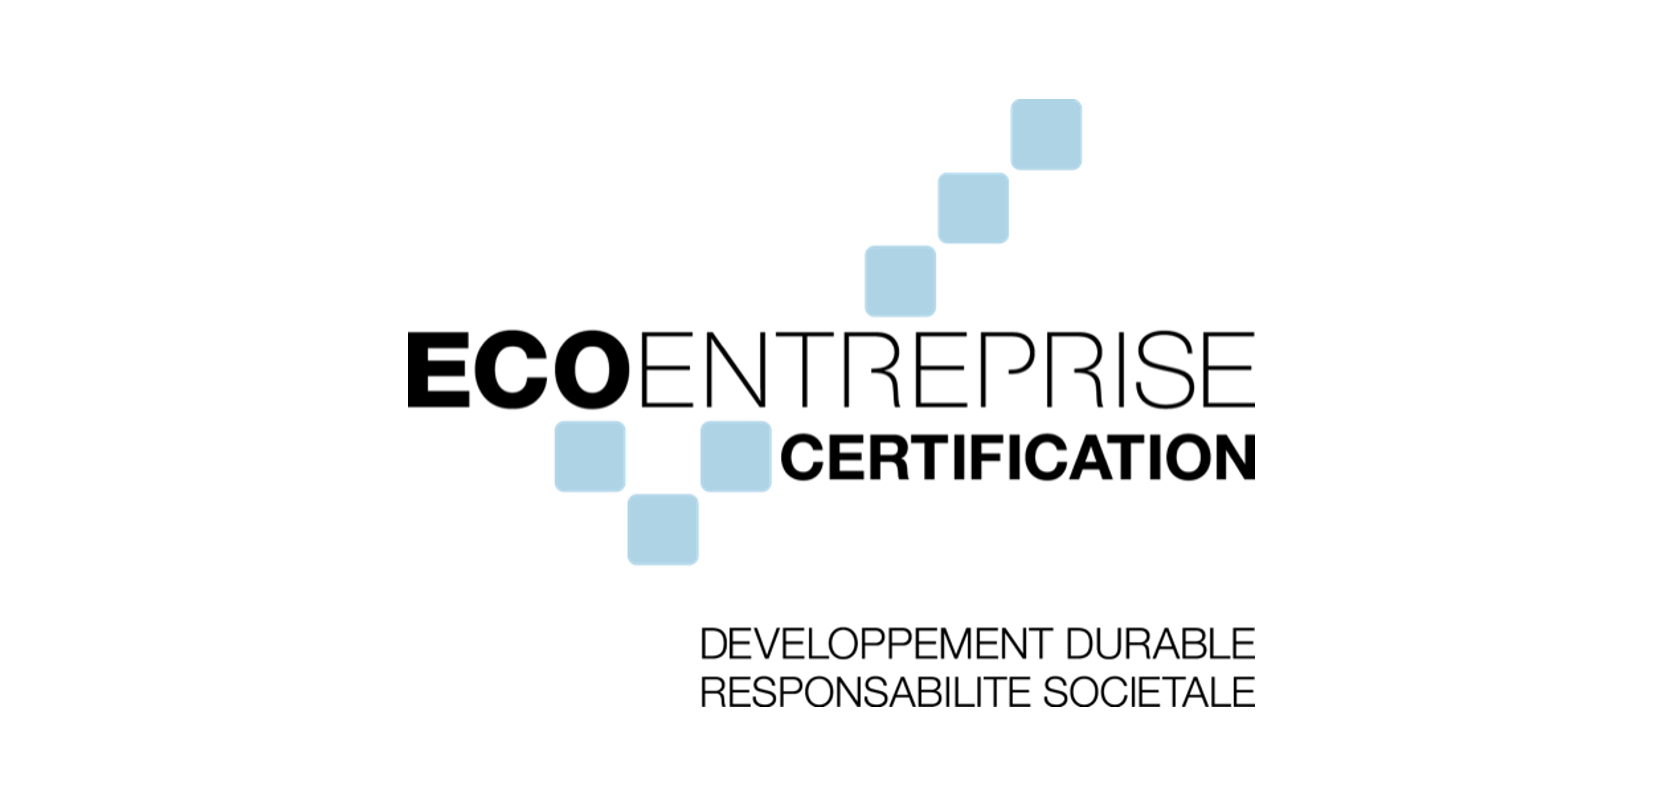 <p>Nouvelle certification<br />
<strong>Engagé pour un avenir durable</strong></p>
<p> </p>
